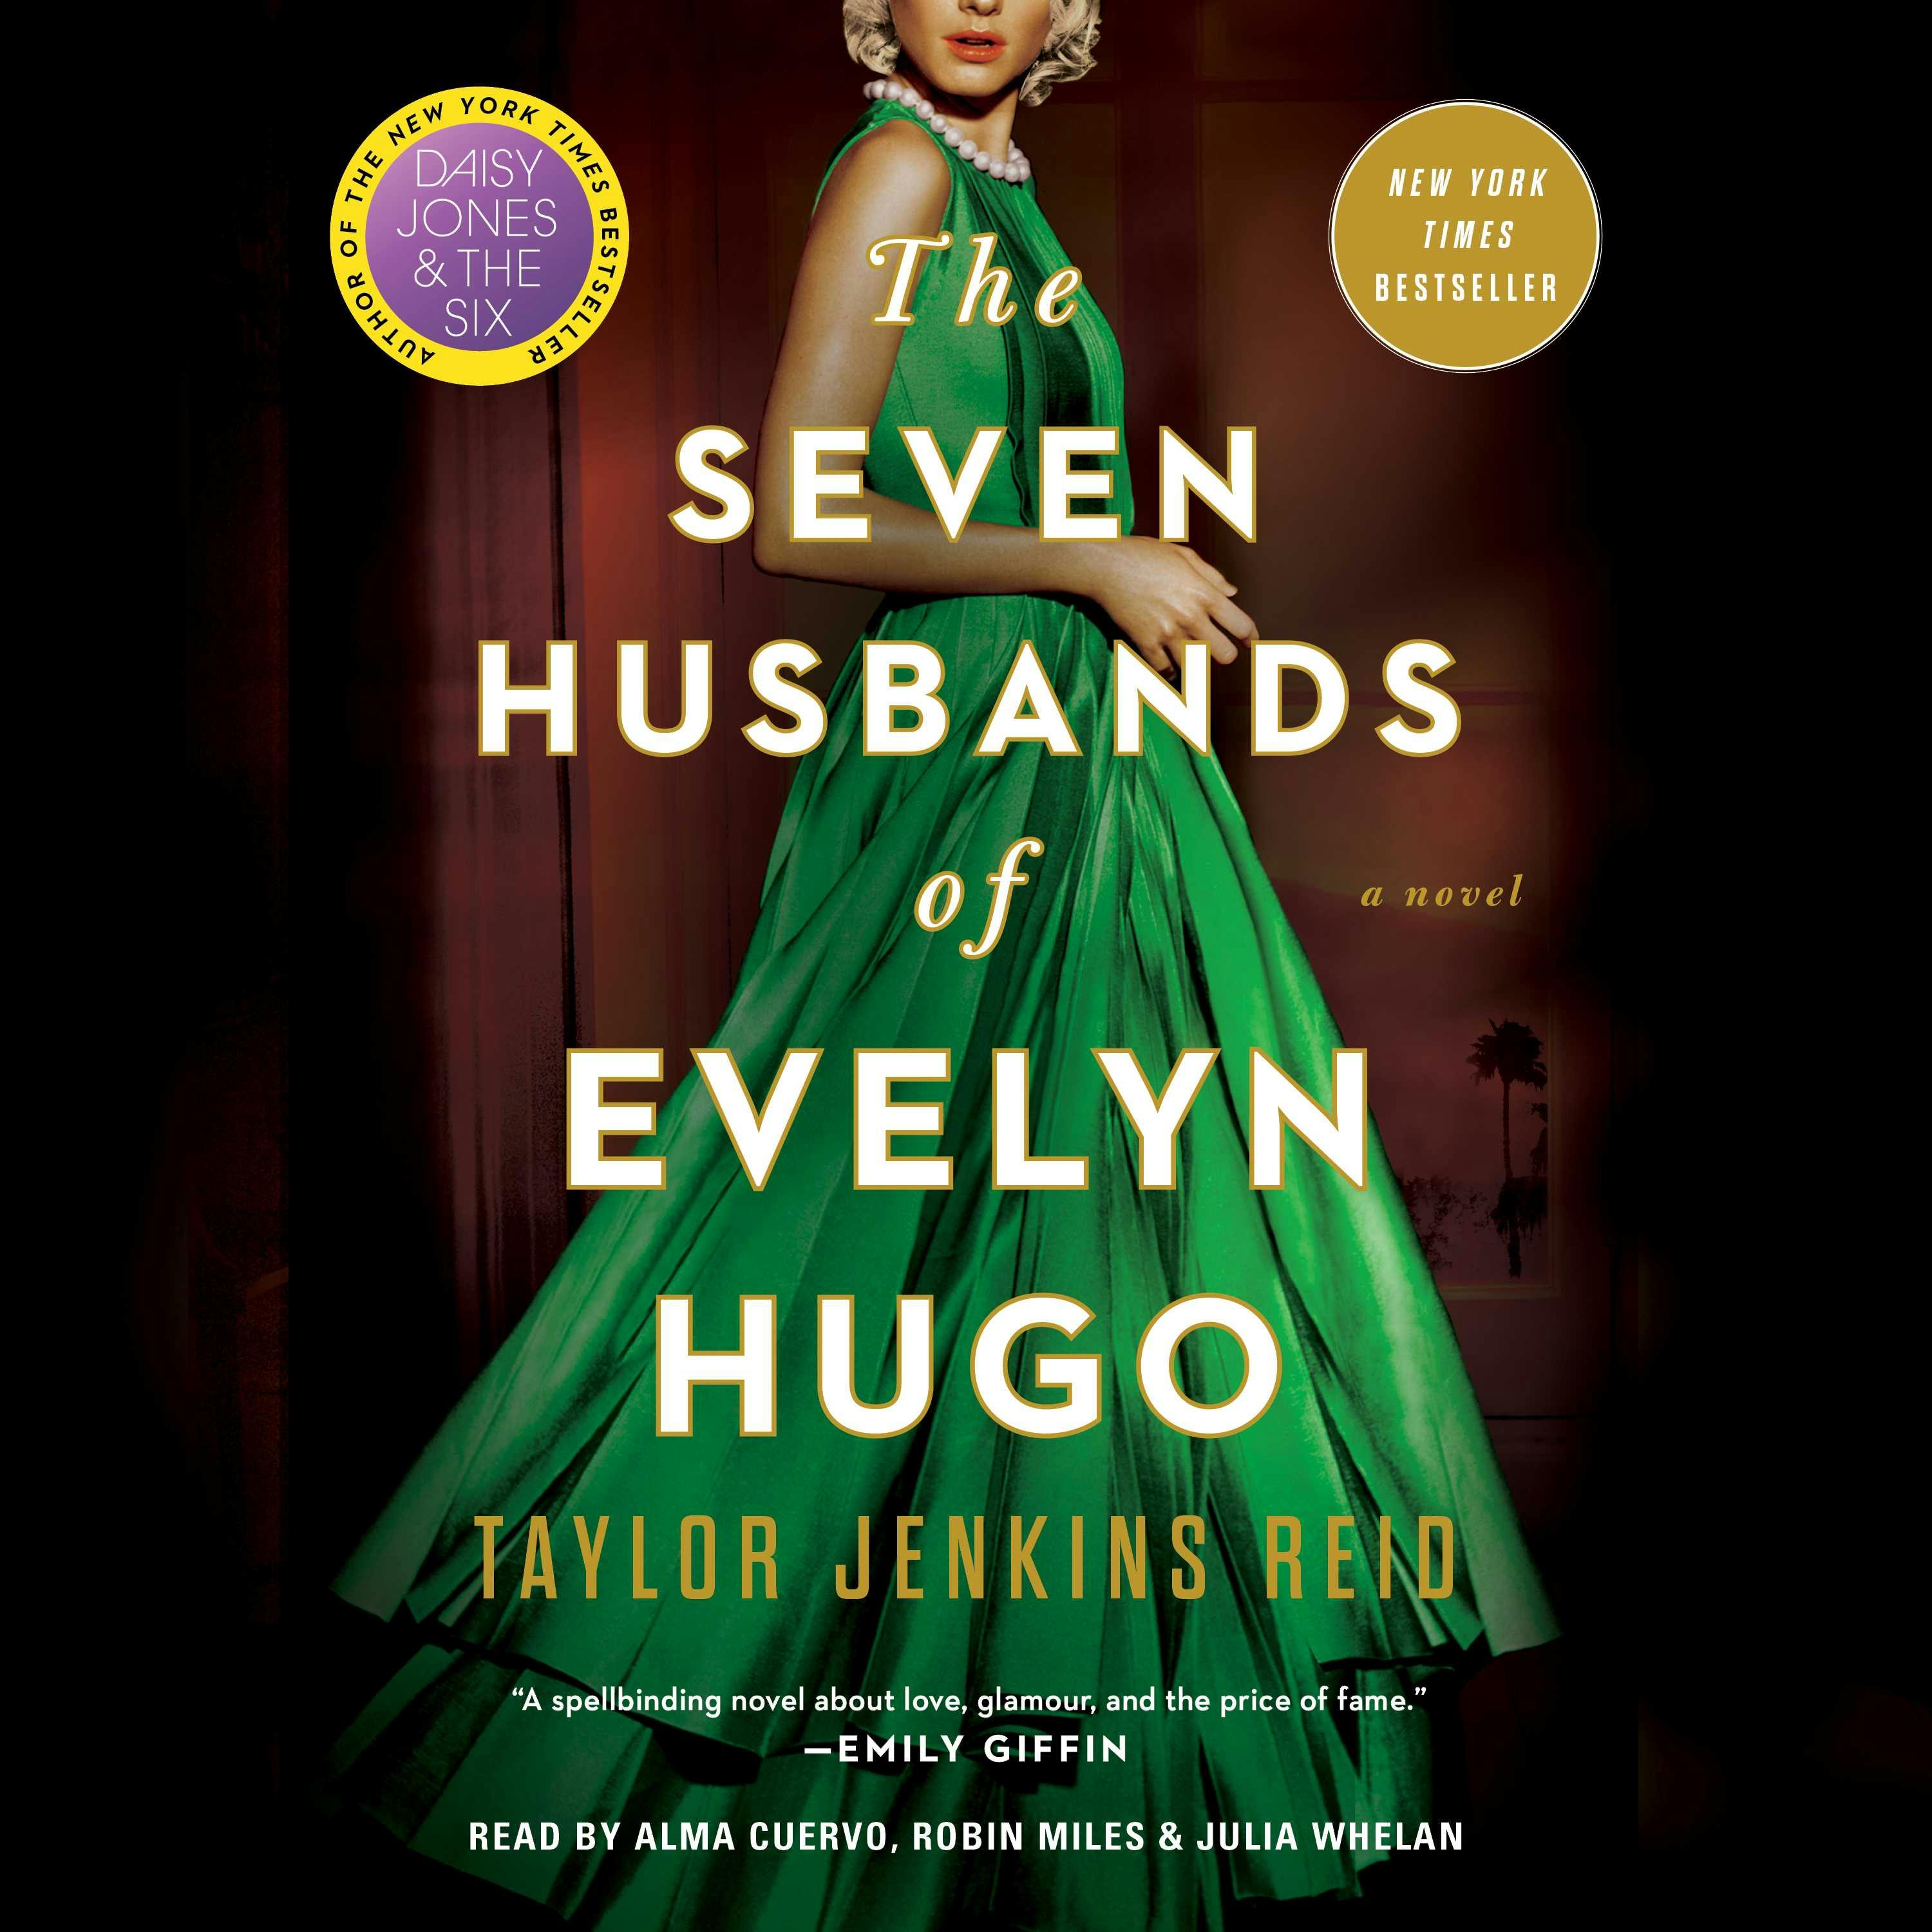 The Seven Husbands of Evelyn Hugo: A Novel - Taylor Jenkins Reid